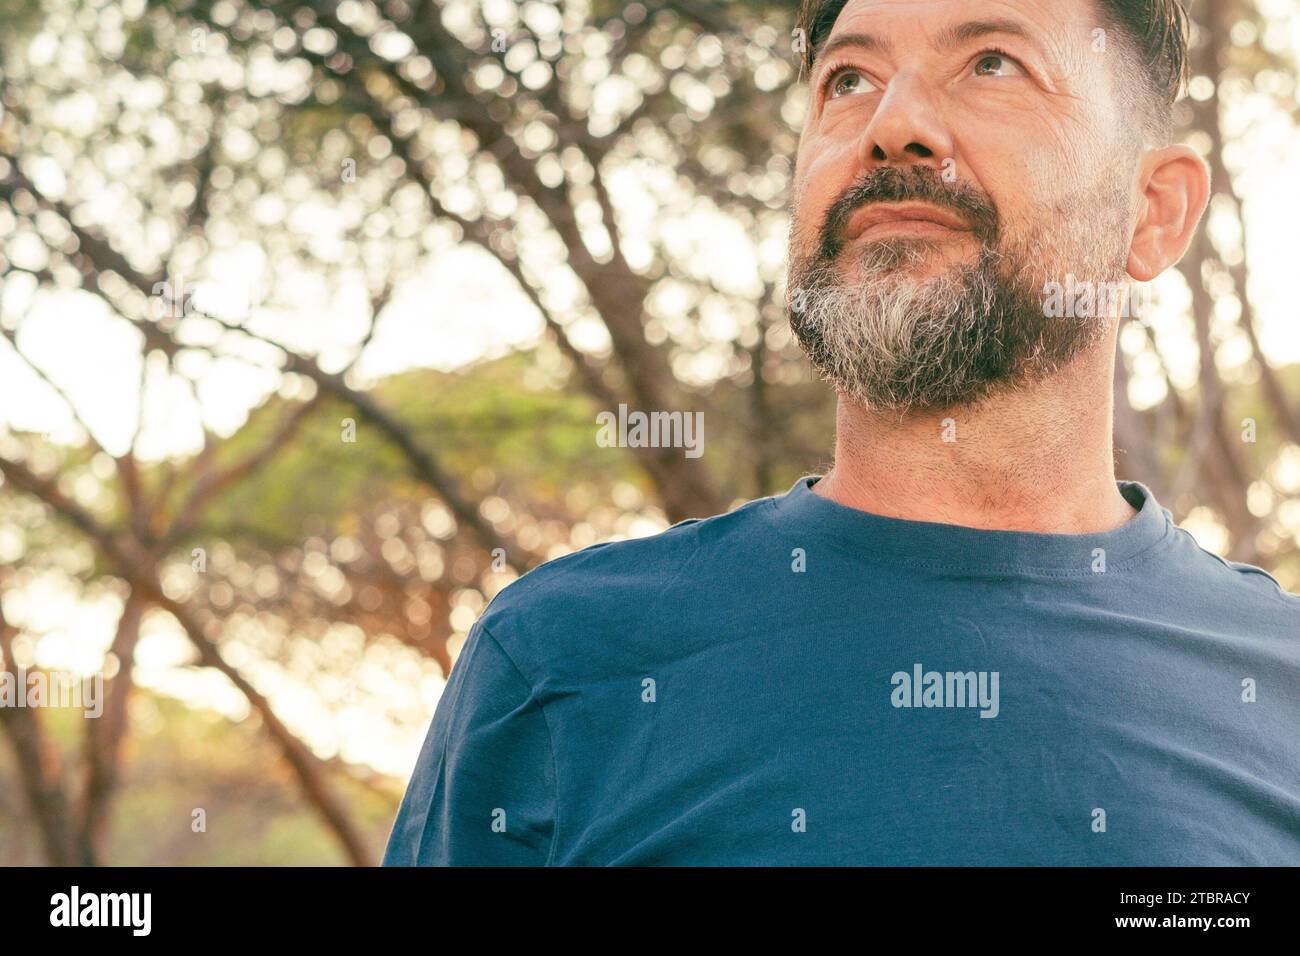 Ritratto ravvicinato di un uomo adulto sicuro di sé che guarda in alto. Uomo barbuto con maglietta blu e alberi sullo sfondo. Persone e attività ricreative all'aperto. Espressione serena sulla faccia. Copyspace Foto Stock